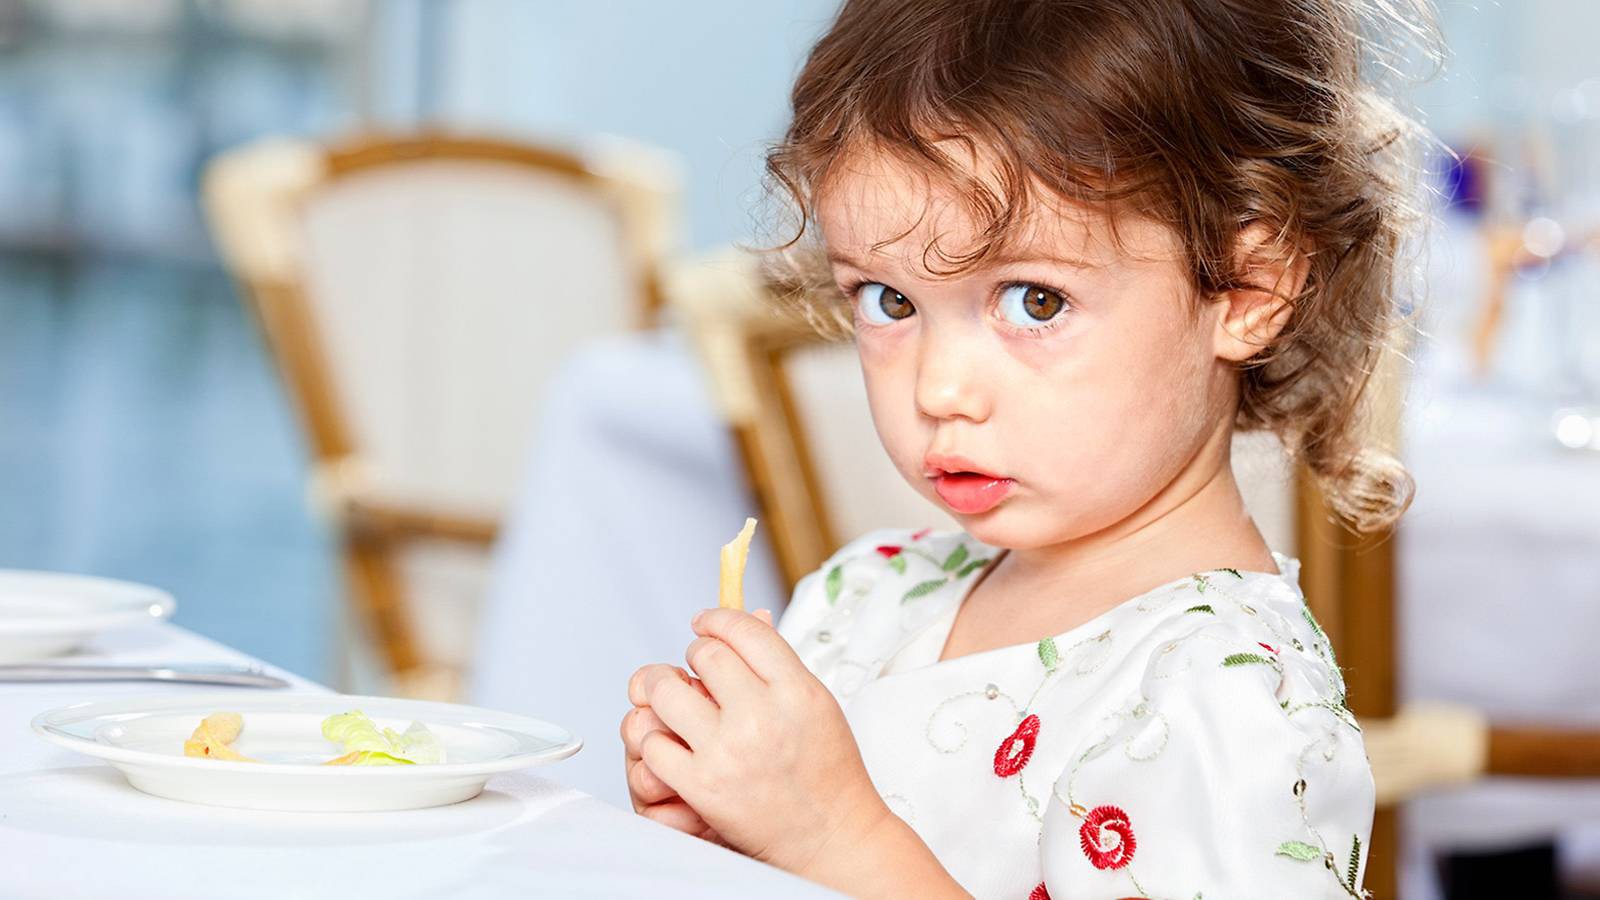 11 thực phẩm tuyệt đối cấm kị cho trẻ sơ sinh mẹ phải nhớ